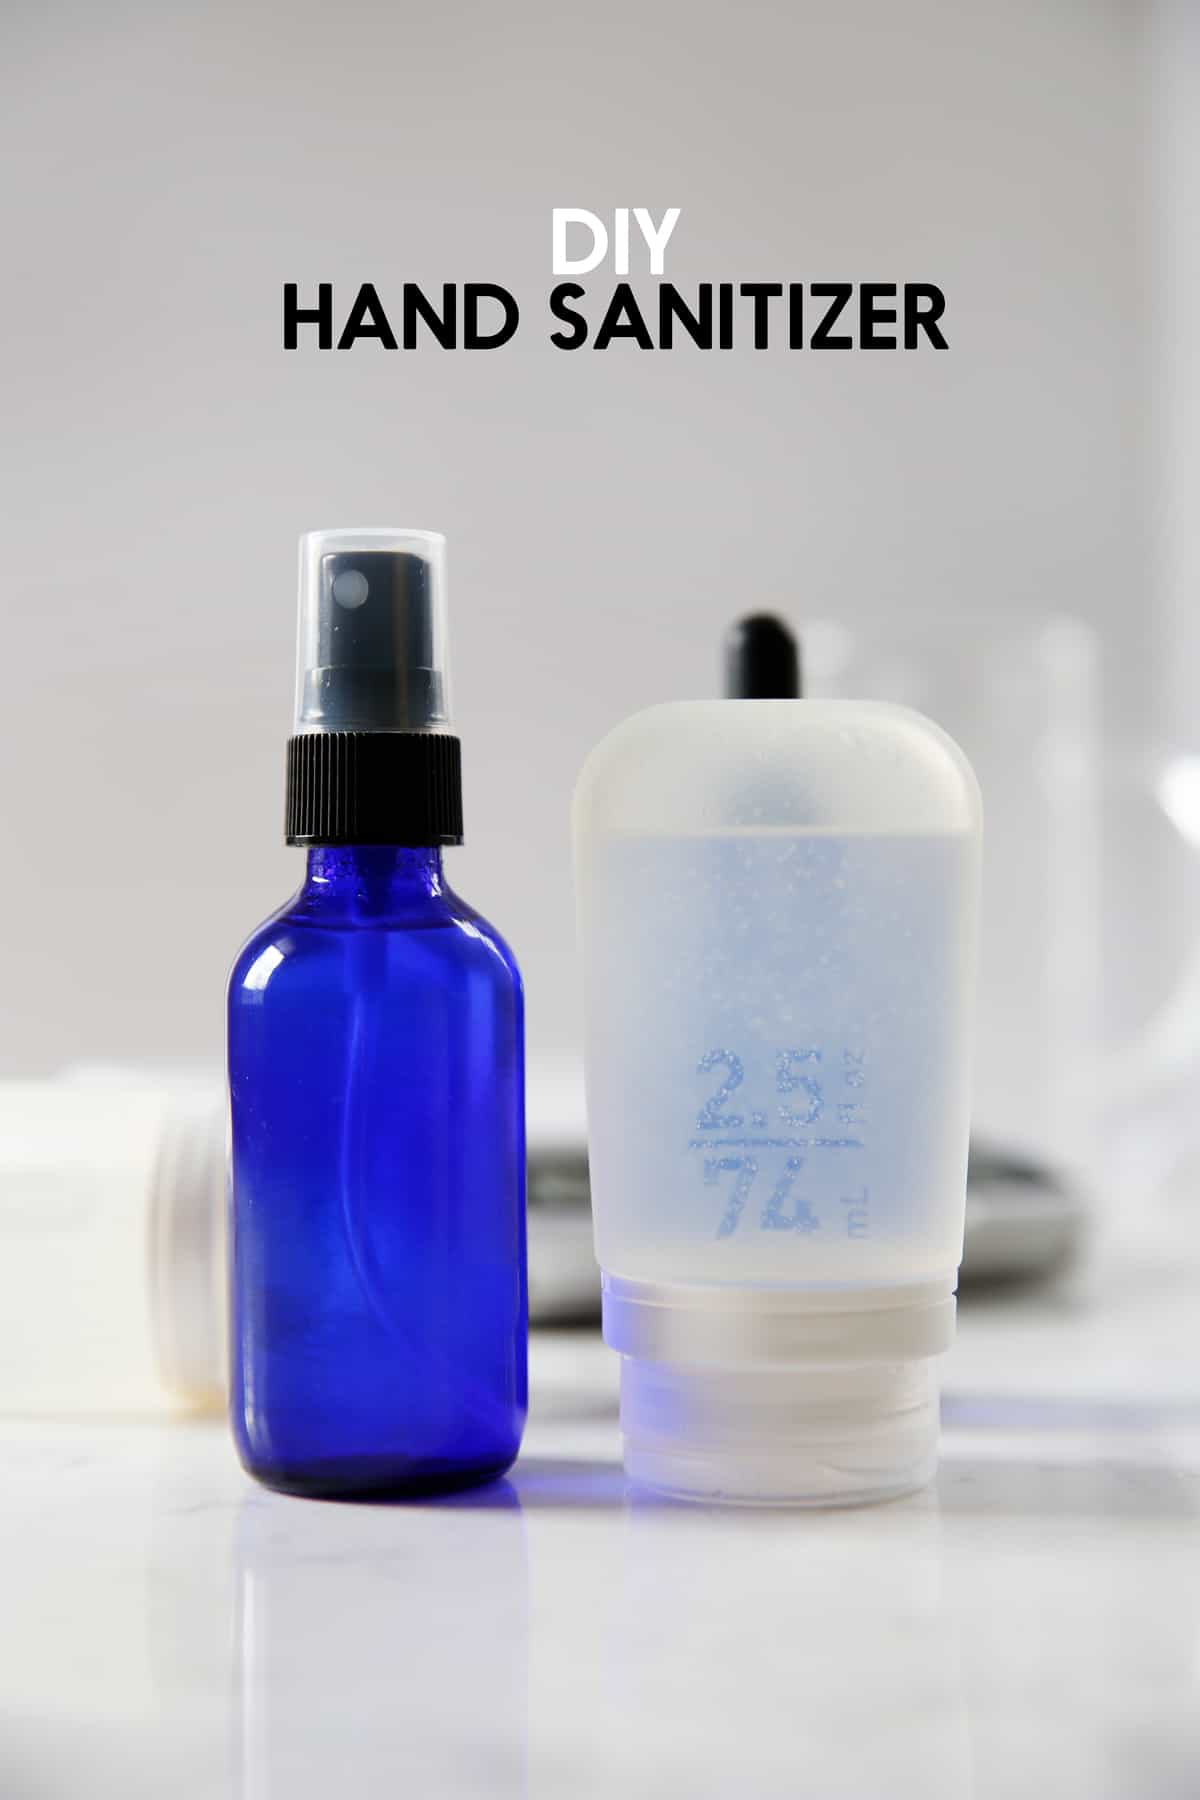 Homemade hand sanitizer in bottles.